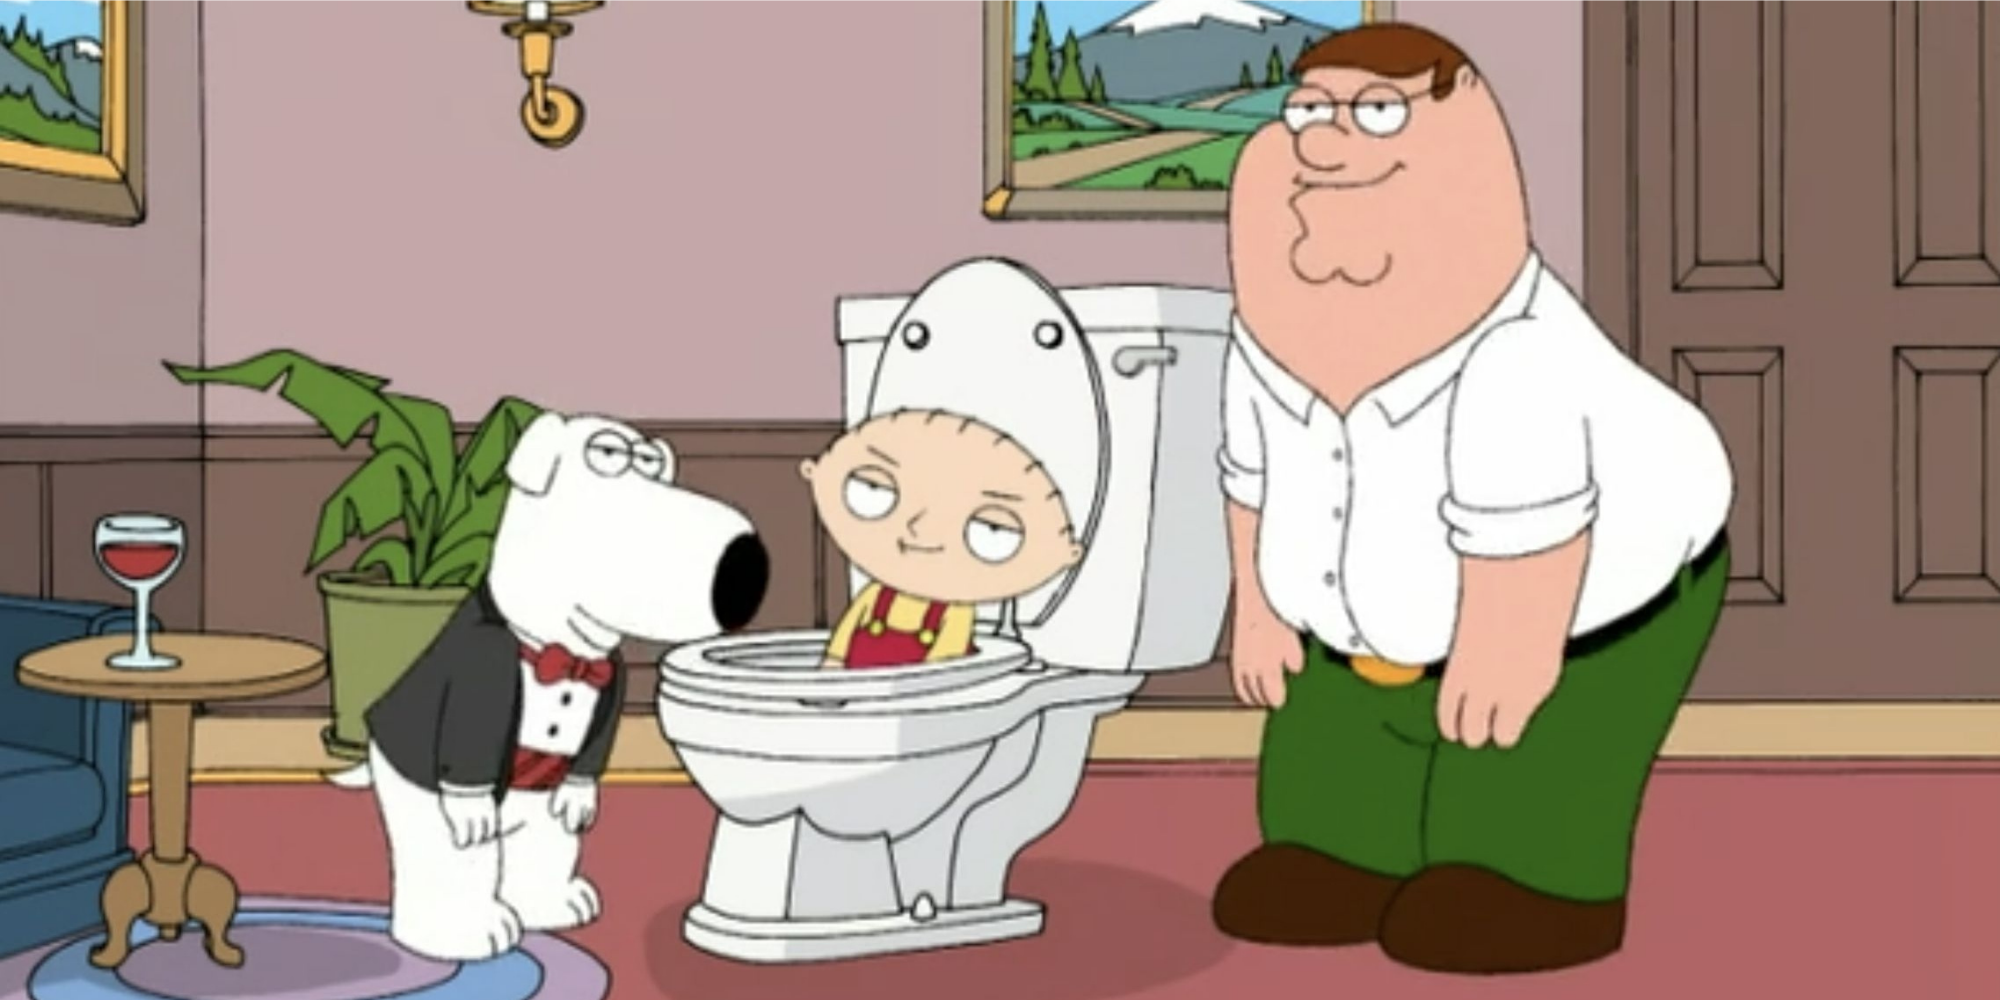 Brian et Peter debout avec Stewie, qui est assis dans des toilettes.